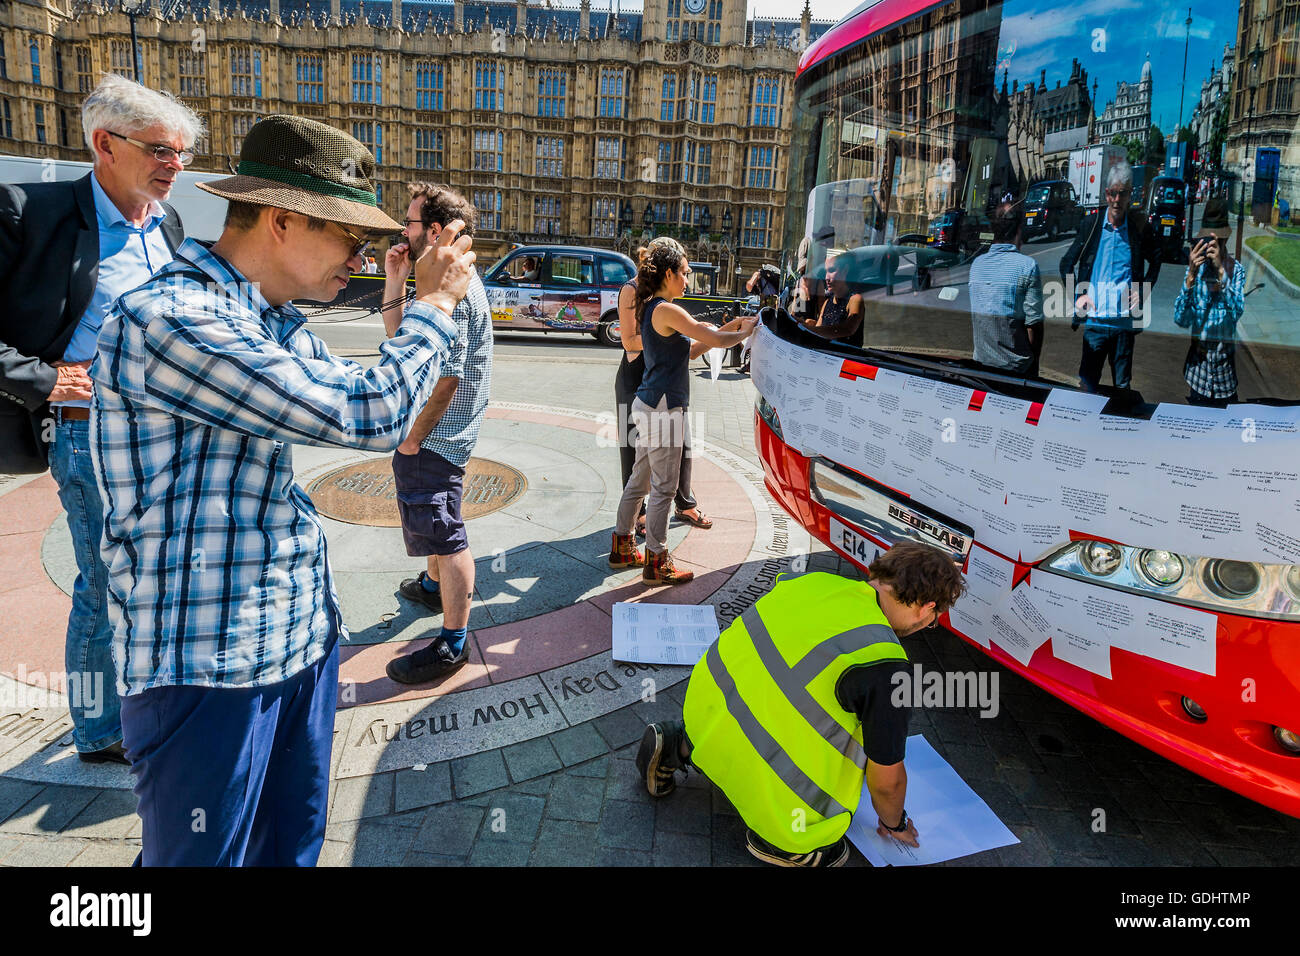 Londra, Regno Unito. 18 Luglio, 2016. John Sauven, direttore esecutivo di Greenpeace UK, orologi come la parte anteriore del bus è coperto in messaggi e un turista prende a scatto - La Brexit 'voto lasciare' battaglia bus (utilizzato da Boris Johnson) è stata acquisita da Greenpeace è stato ri-branded al di fuori del Parlamento. Il £350m NHS rivendicazione è stata coperta con migliaia di domande per il nuovo governo da lasciare e rimanere elettori - molti di loro cosa Brexit mezzi per l'ambiente. Le domande scritte su adesivi, stanno formando un montaggio che illustrerà le parole 'tempo di verità" in grandi lettere bianche sul lato Foto Stock